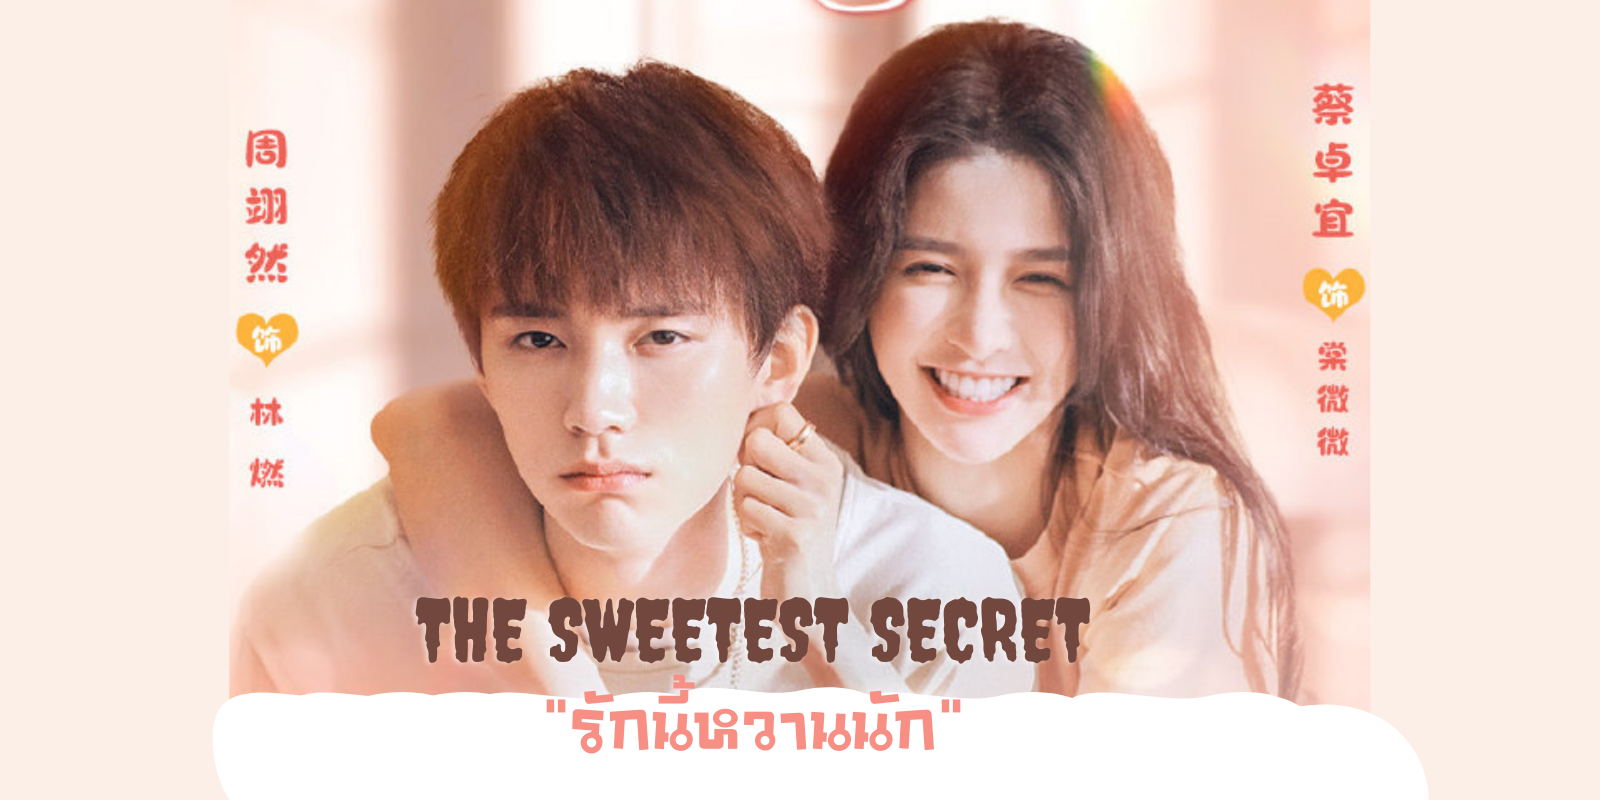 ดูซีรีย์ The Sweetest Secret (2021) 